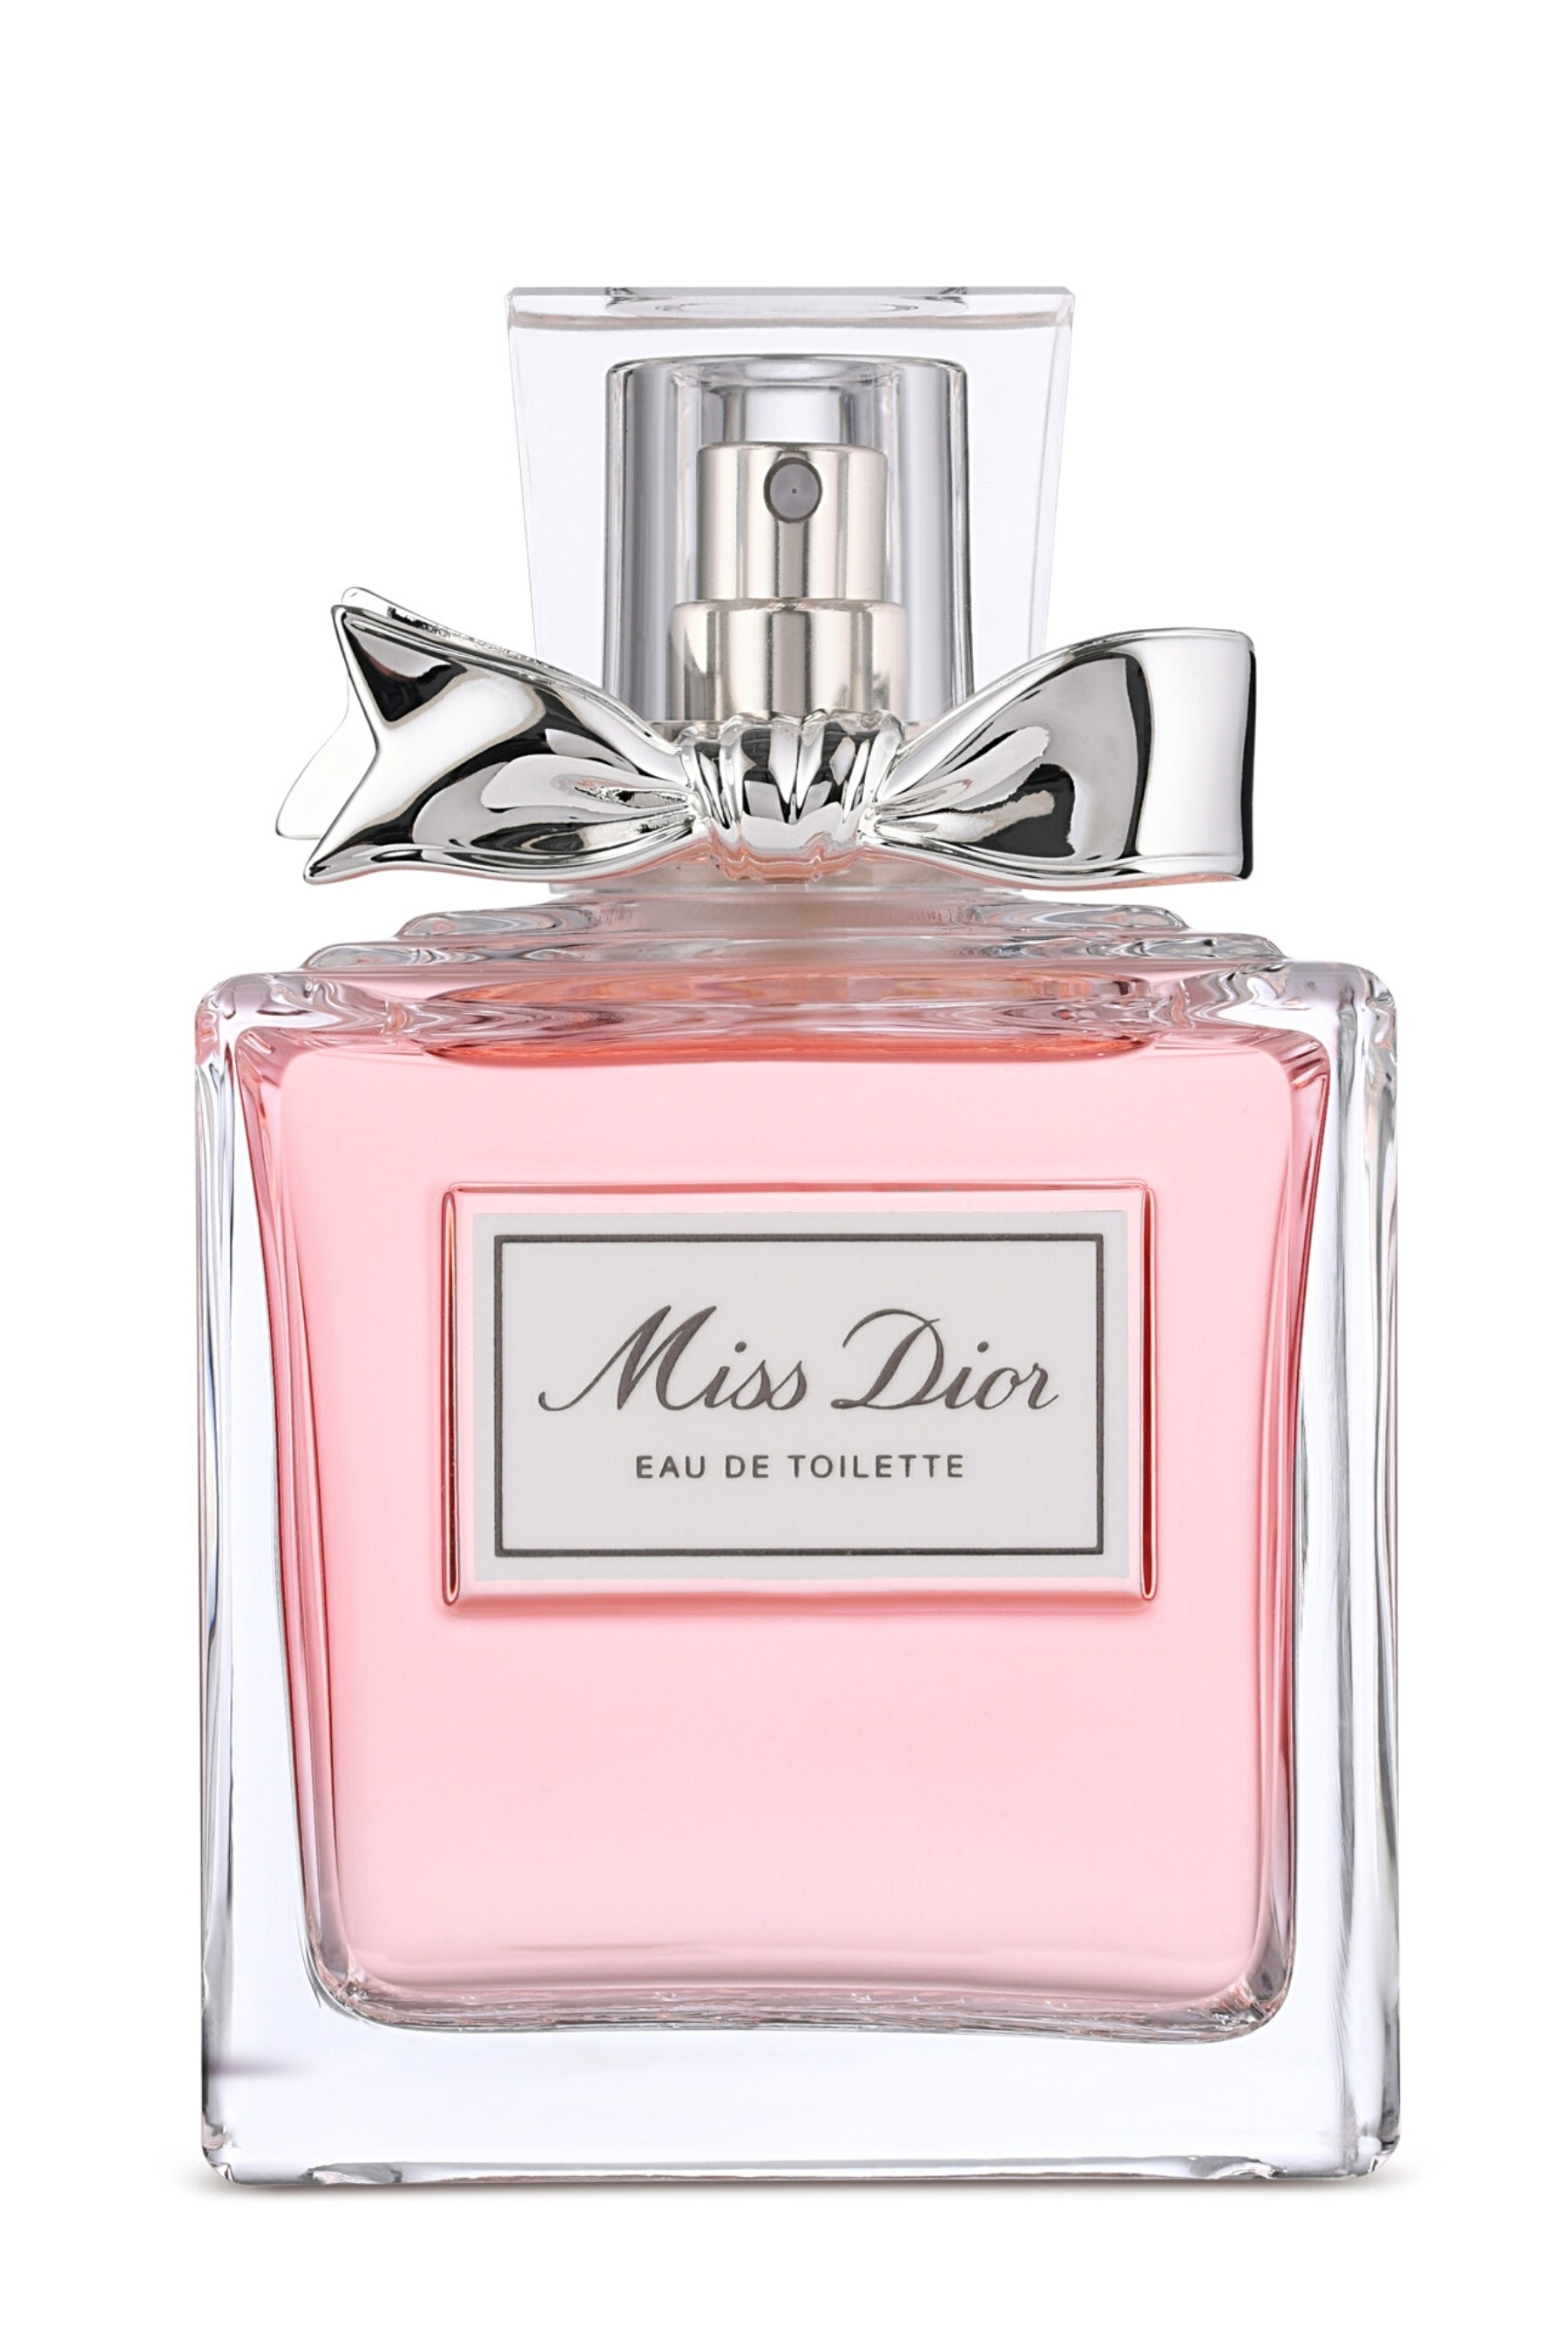 Miss Dior  Eau de Parfum 100 ml  Christian Dior  MY TRENDY LADY